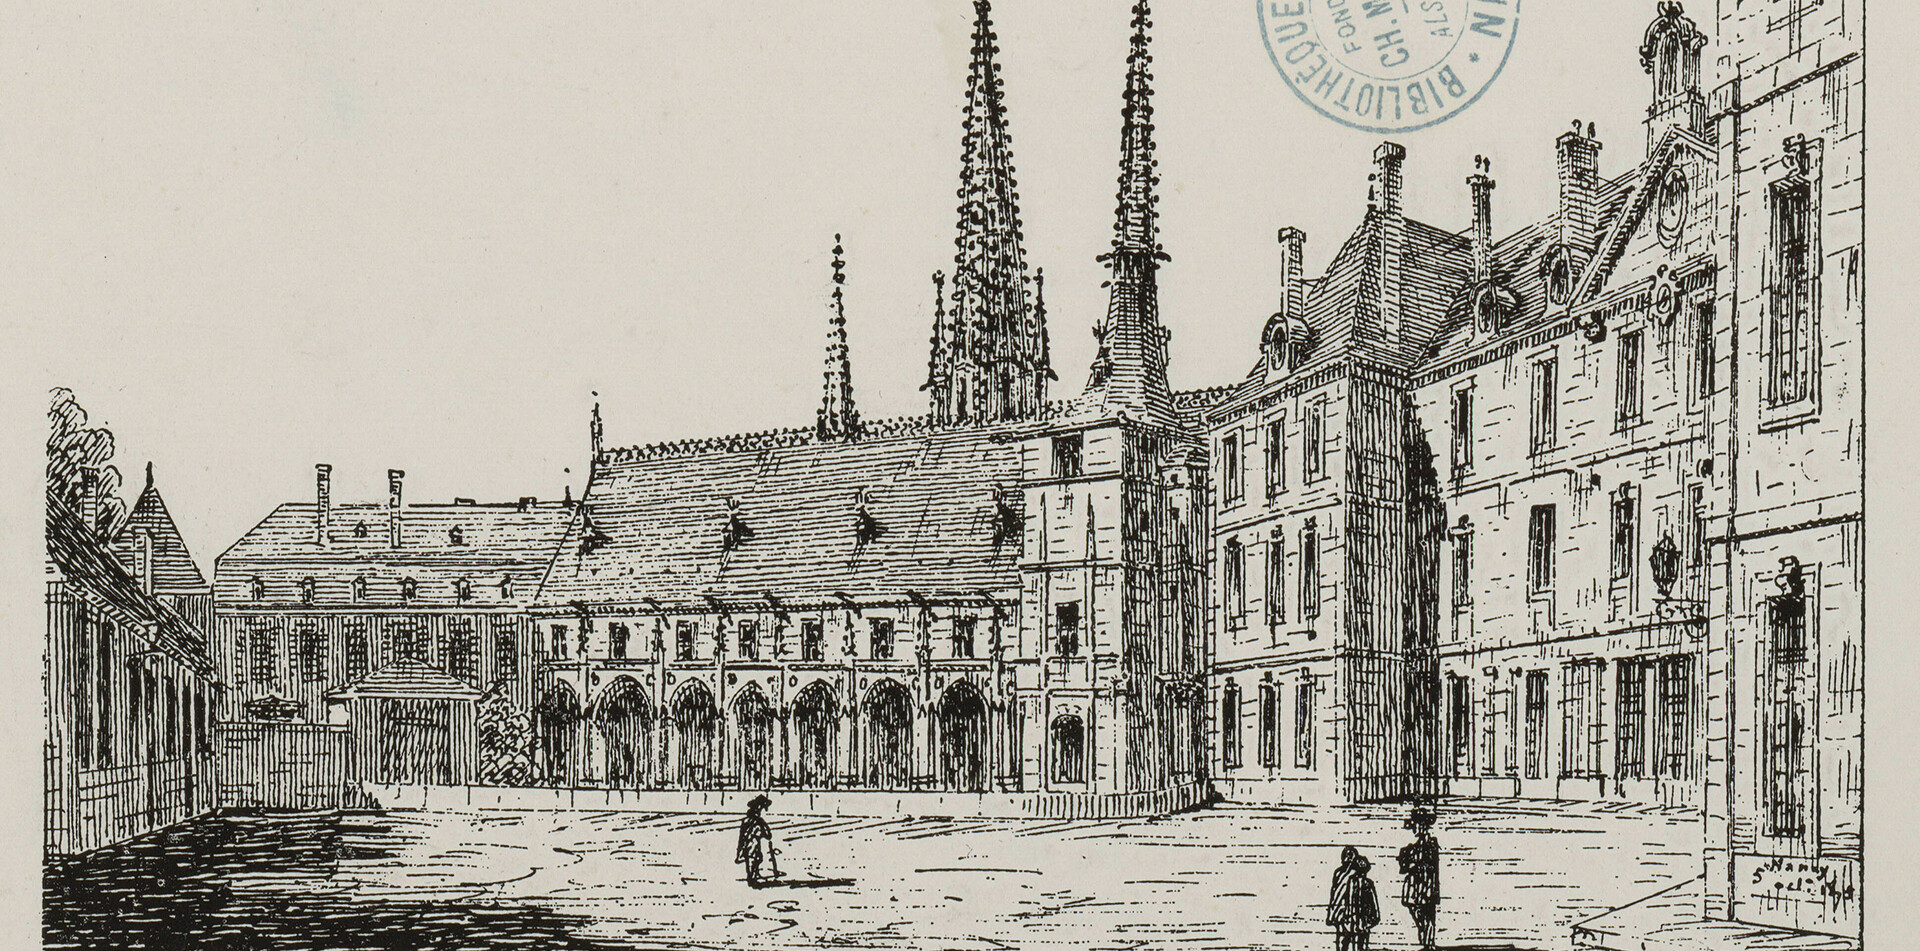 Contenu du La Bibliothèque publique de Nancy fondée par le roi de Pologne (1750-1789)